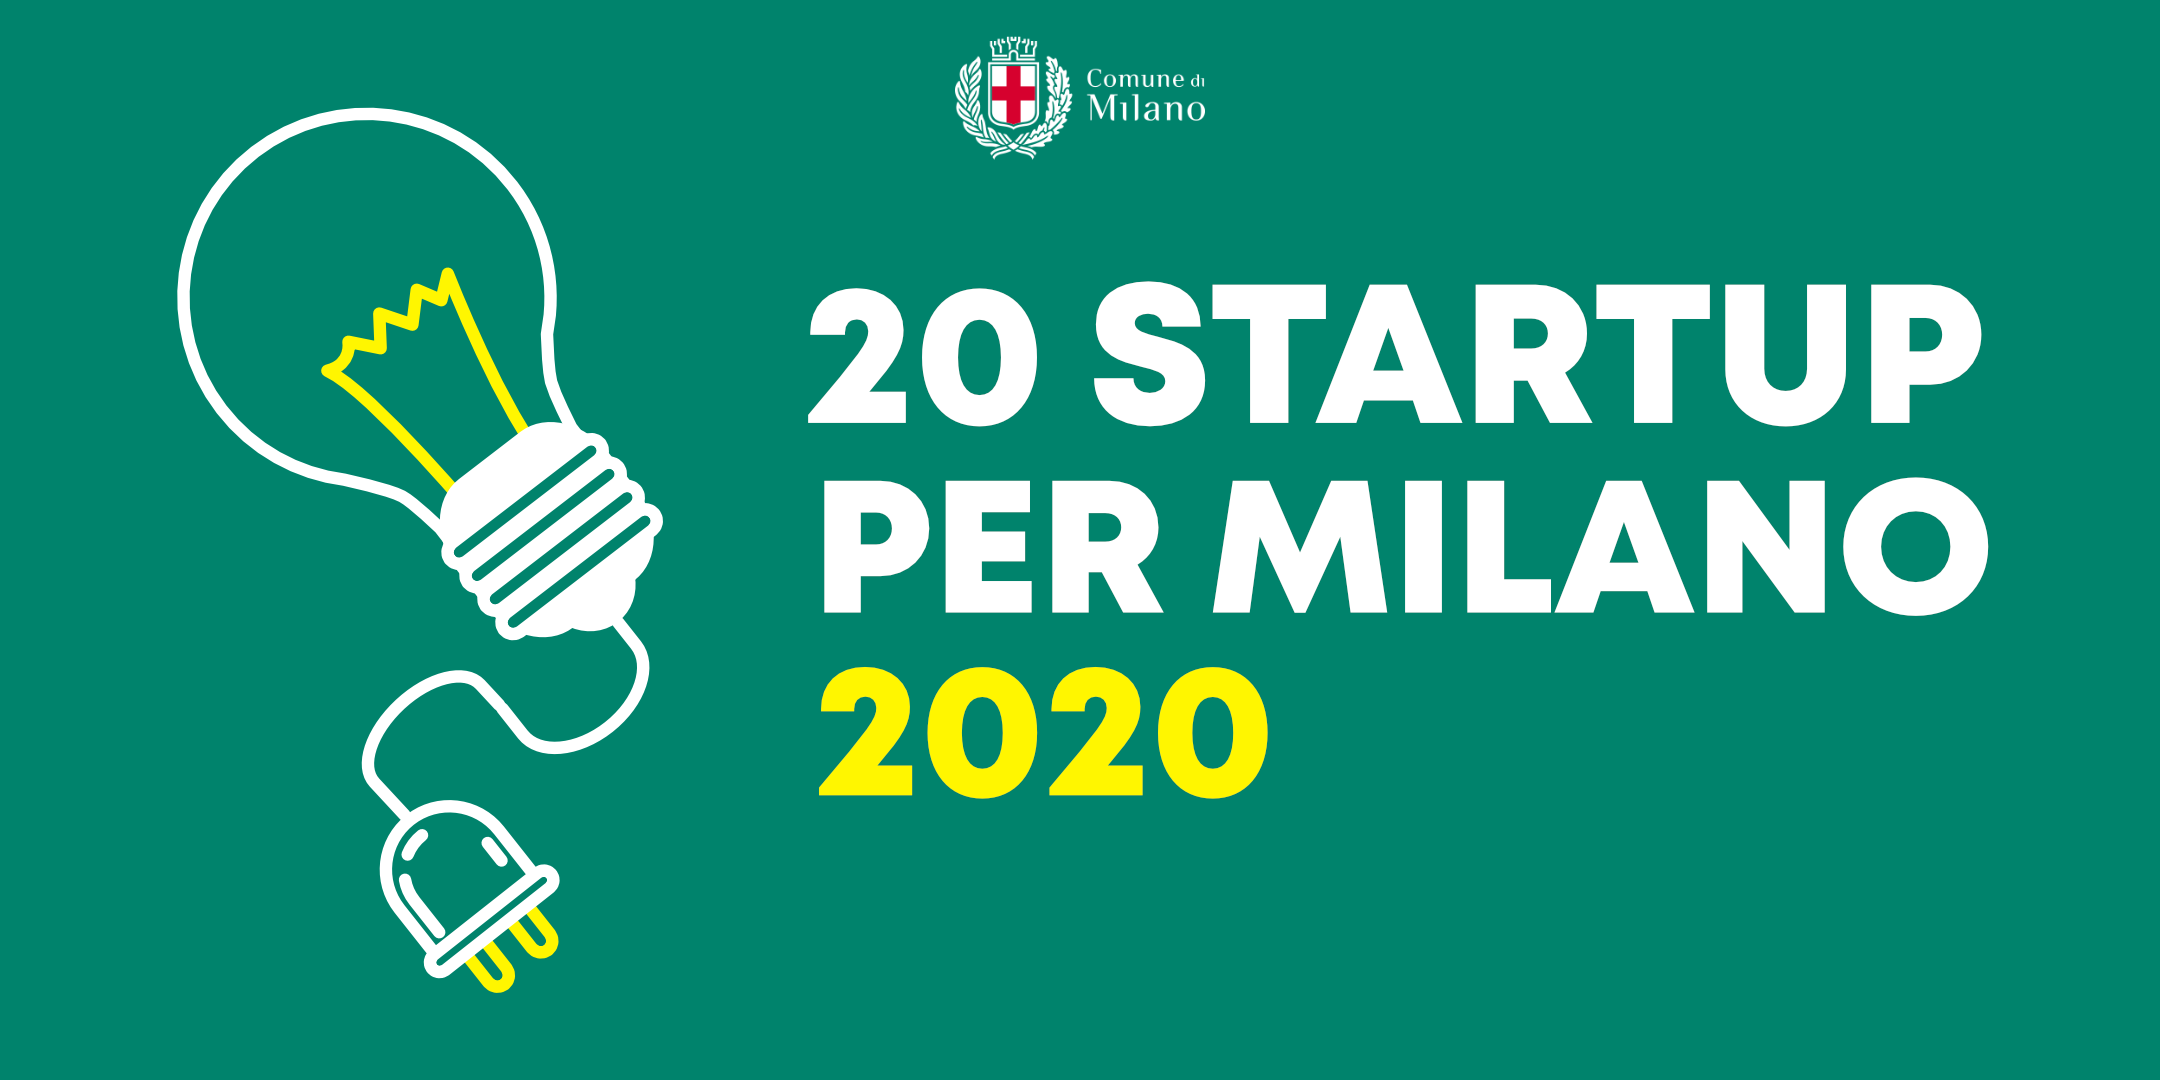 20 Startup per Milano 2020: evento di lancio